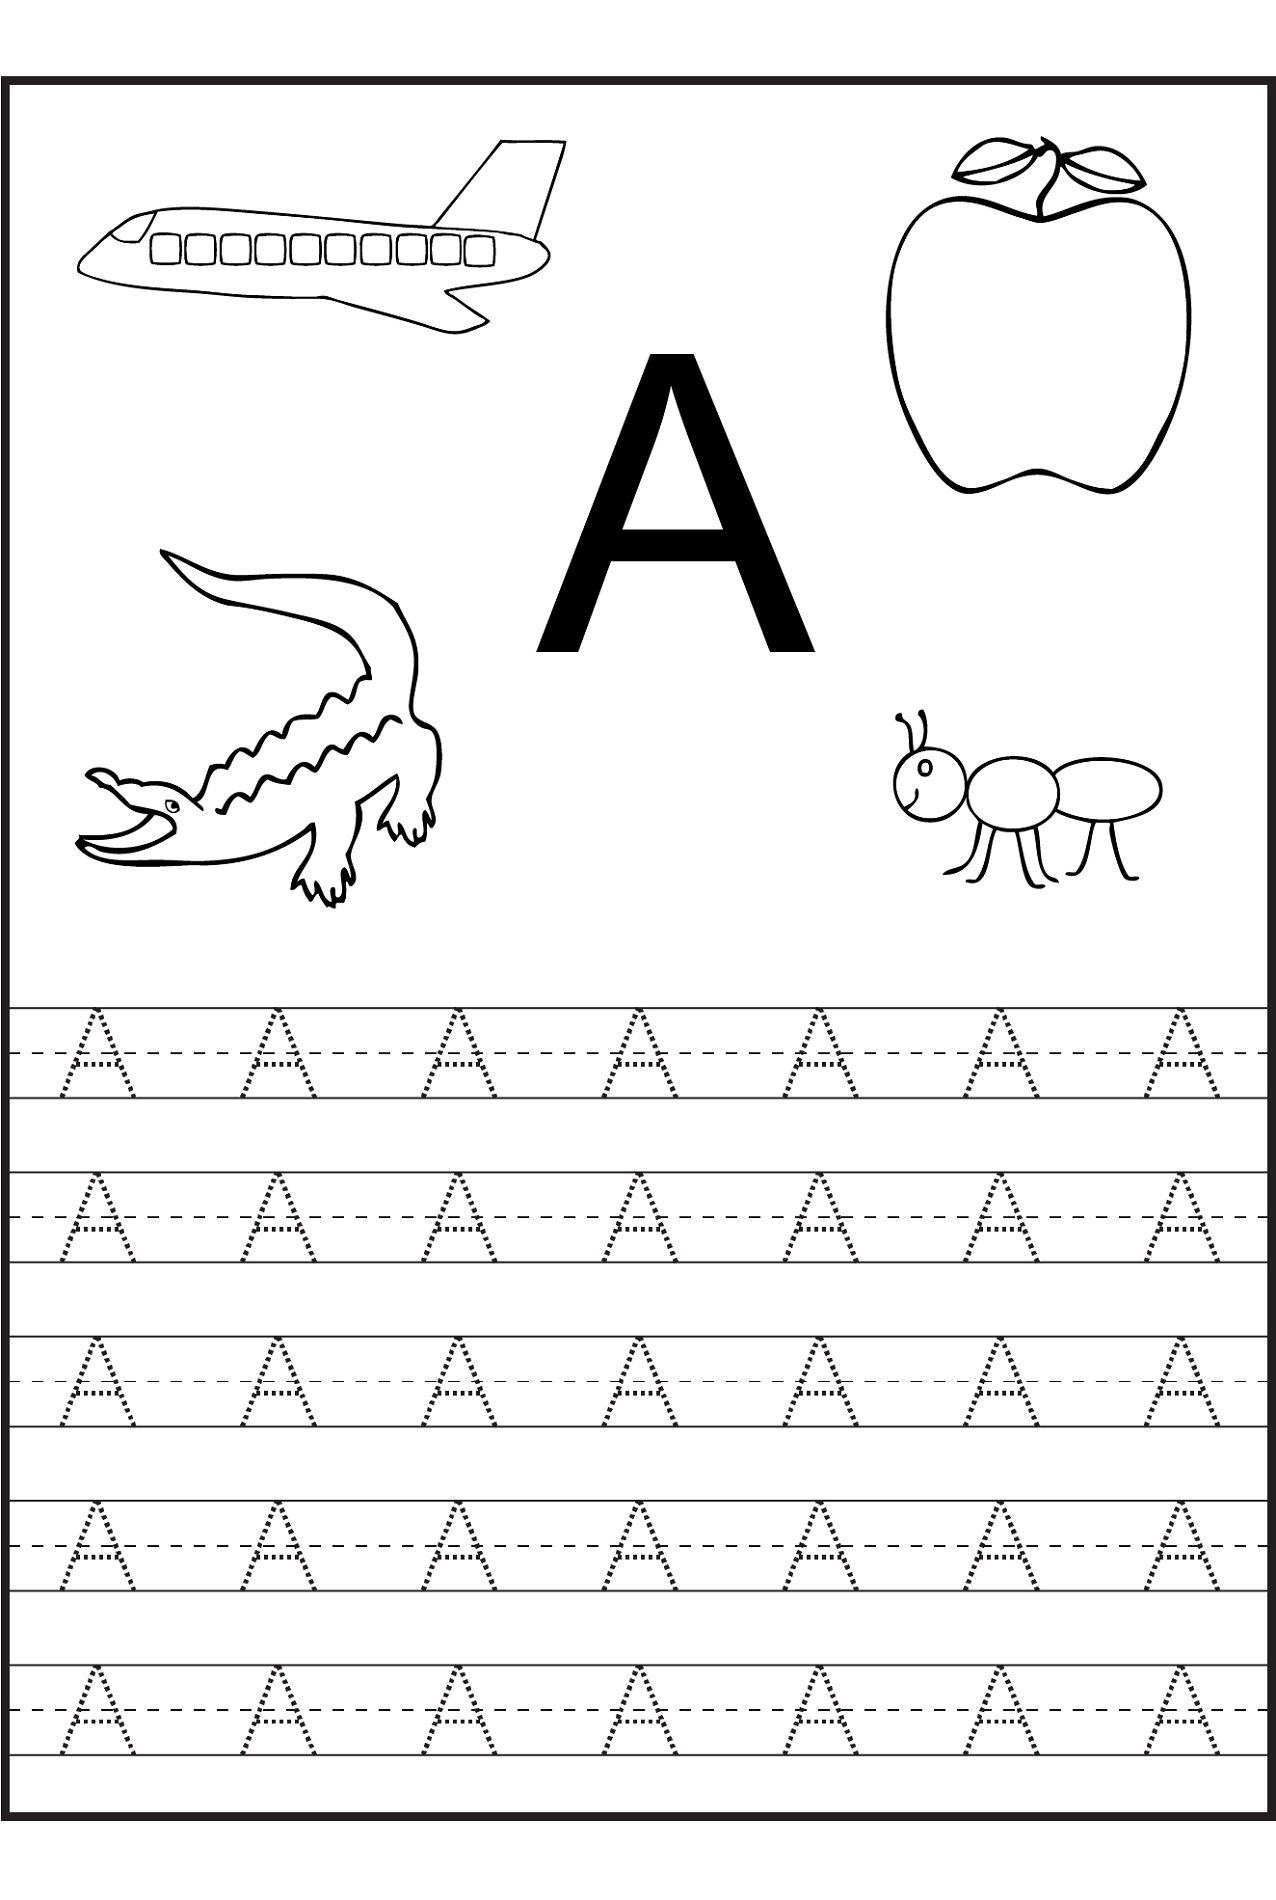 memo writing activity for preschoolers